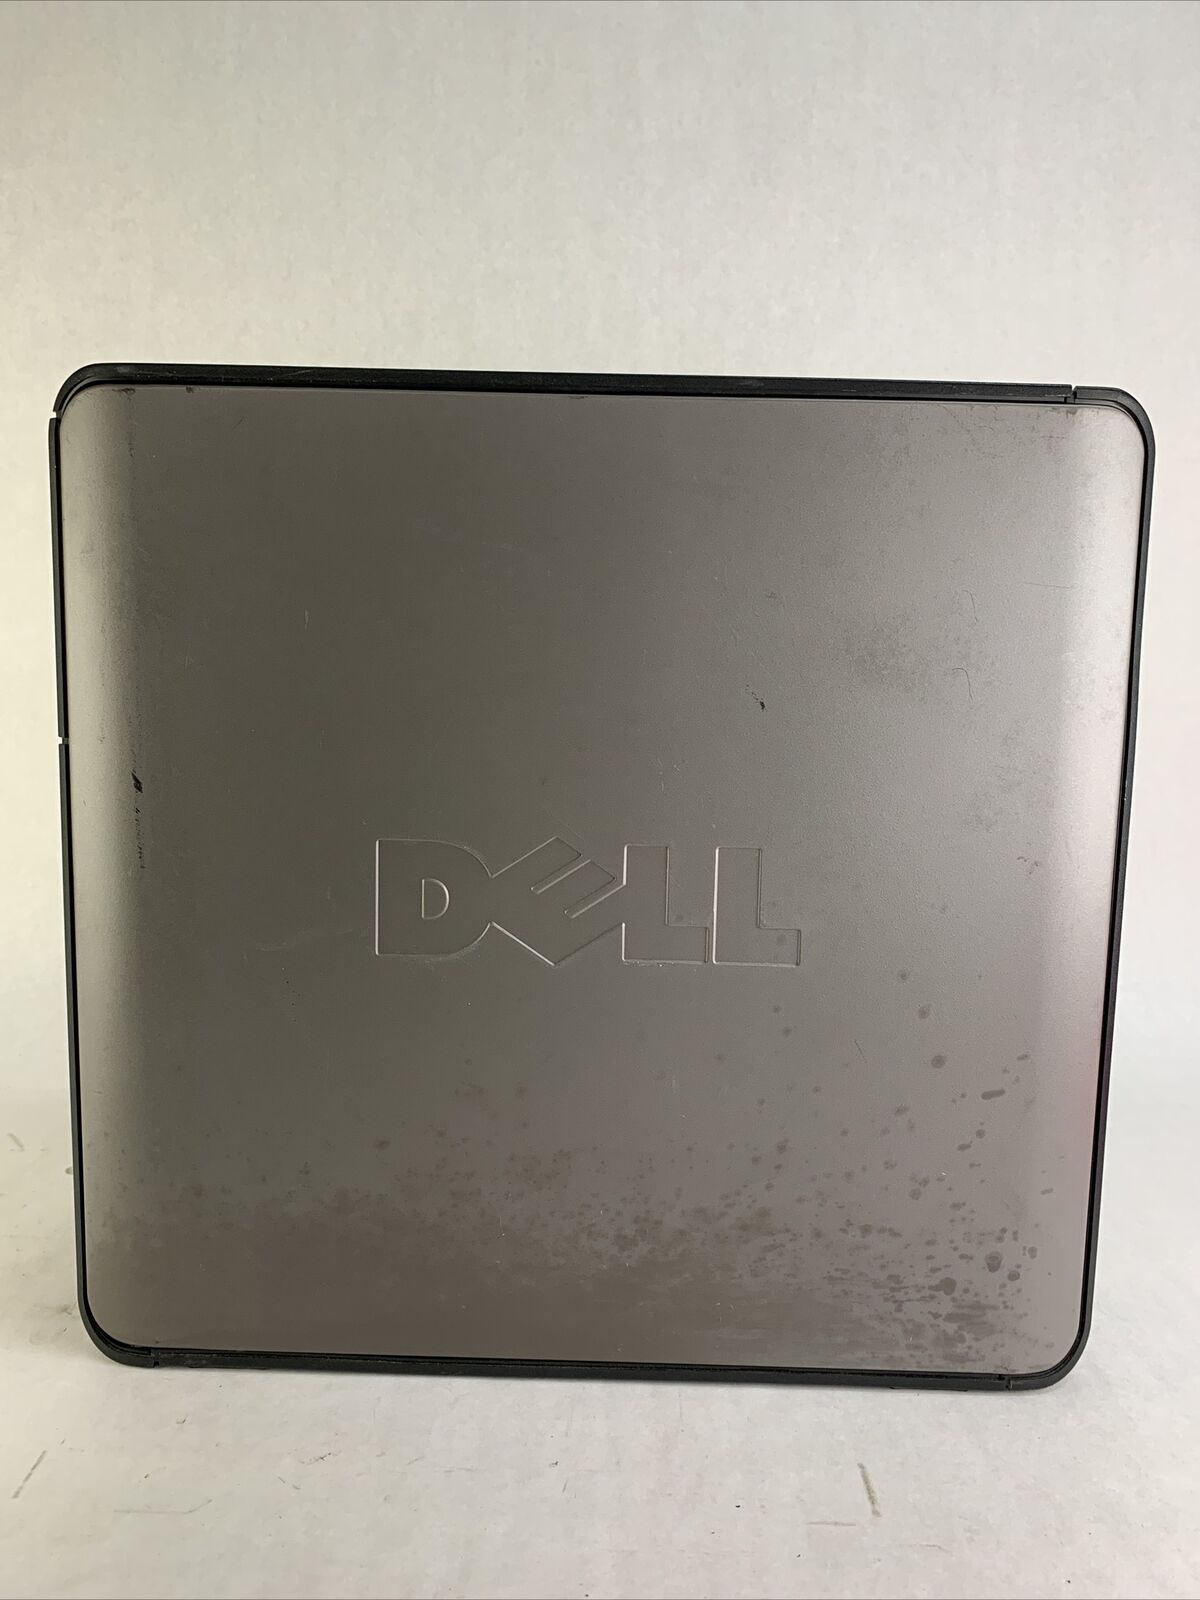 Dell Optiplex 360 MT Intel Pentium E5200 2.5GHz 2GB RAM No HDD No OS